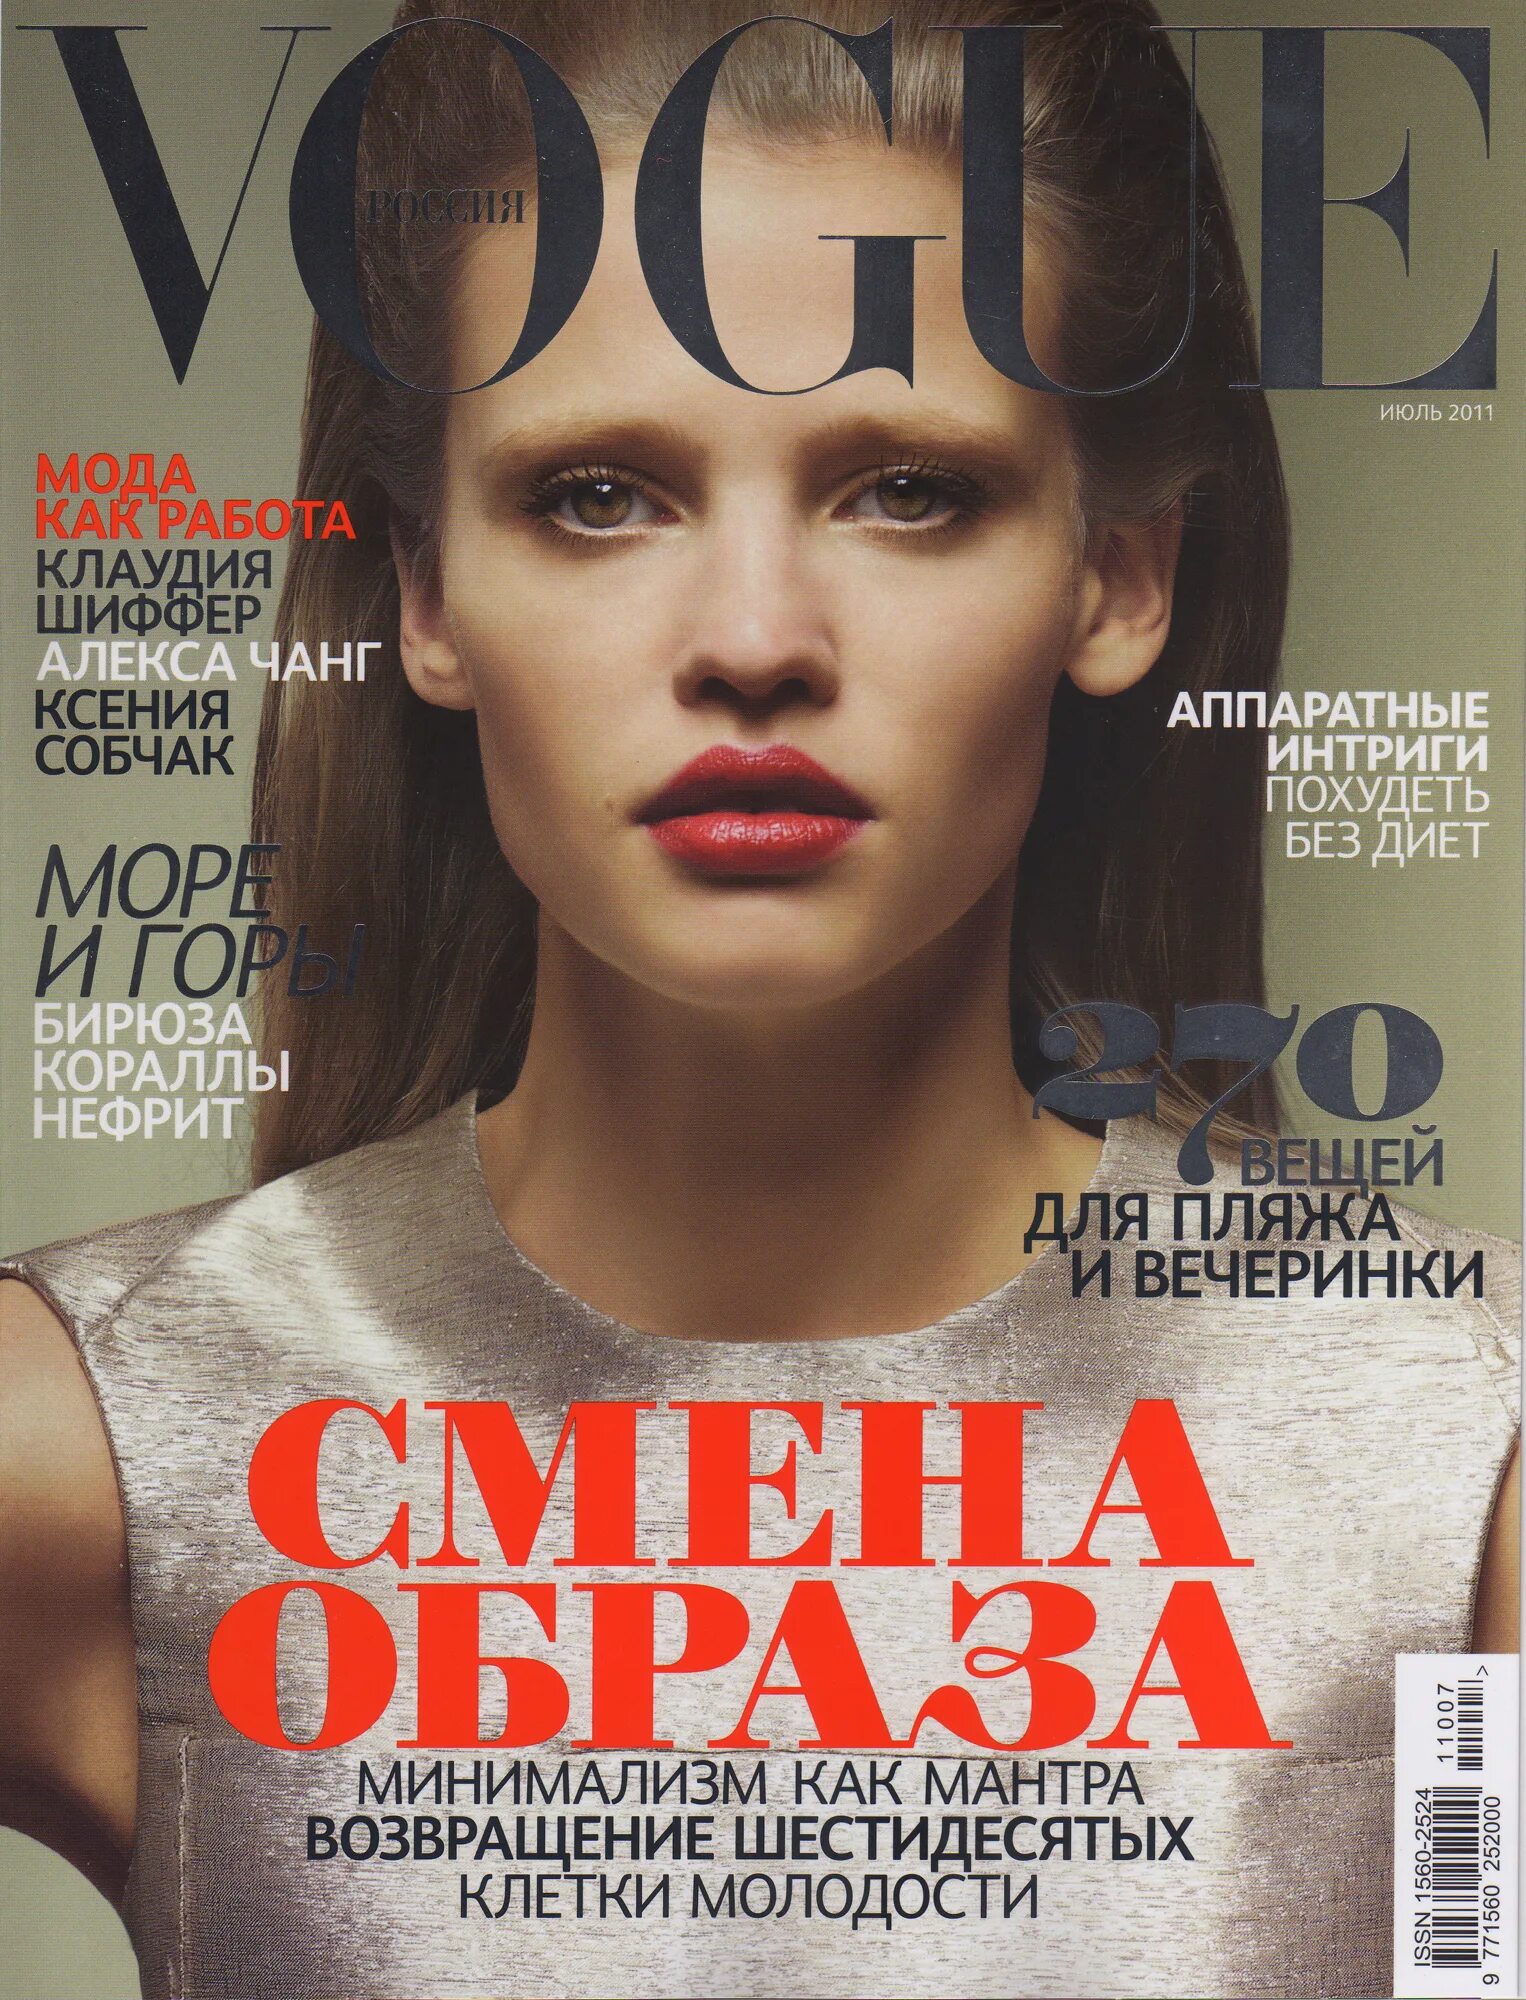 Обложка для журнала. Обложка журнала Vogue. Обложка глянцевого журнала. Обложки русских журналов